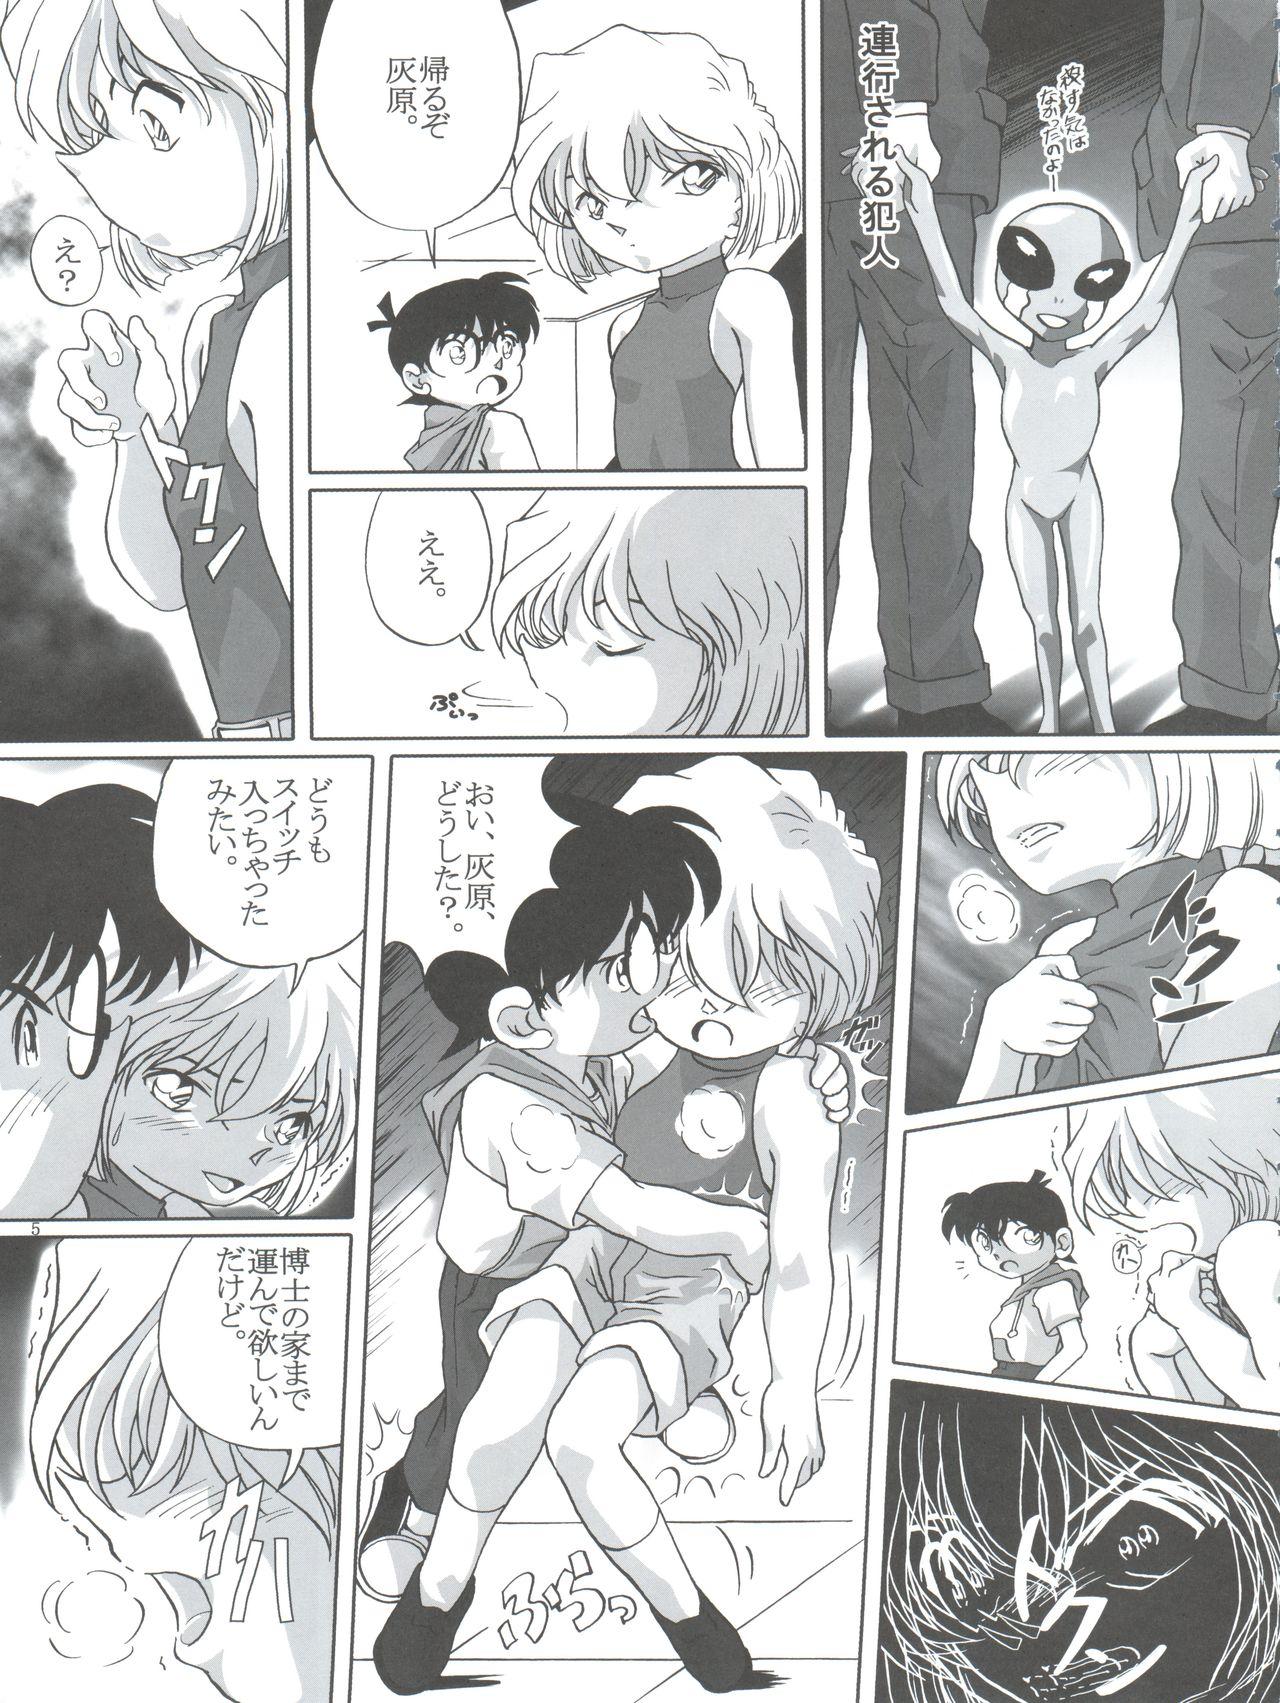 Load (C64) [Studio Empty (Nishi)] Shelley's U2 - Sherry-san no Yuuutsu (Detective Conan) - Detective conan Gay Outdoor - Page 5